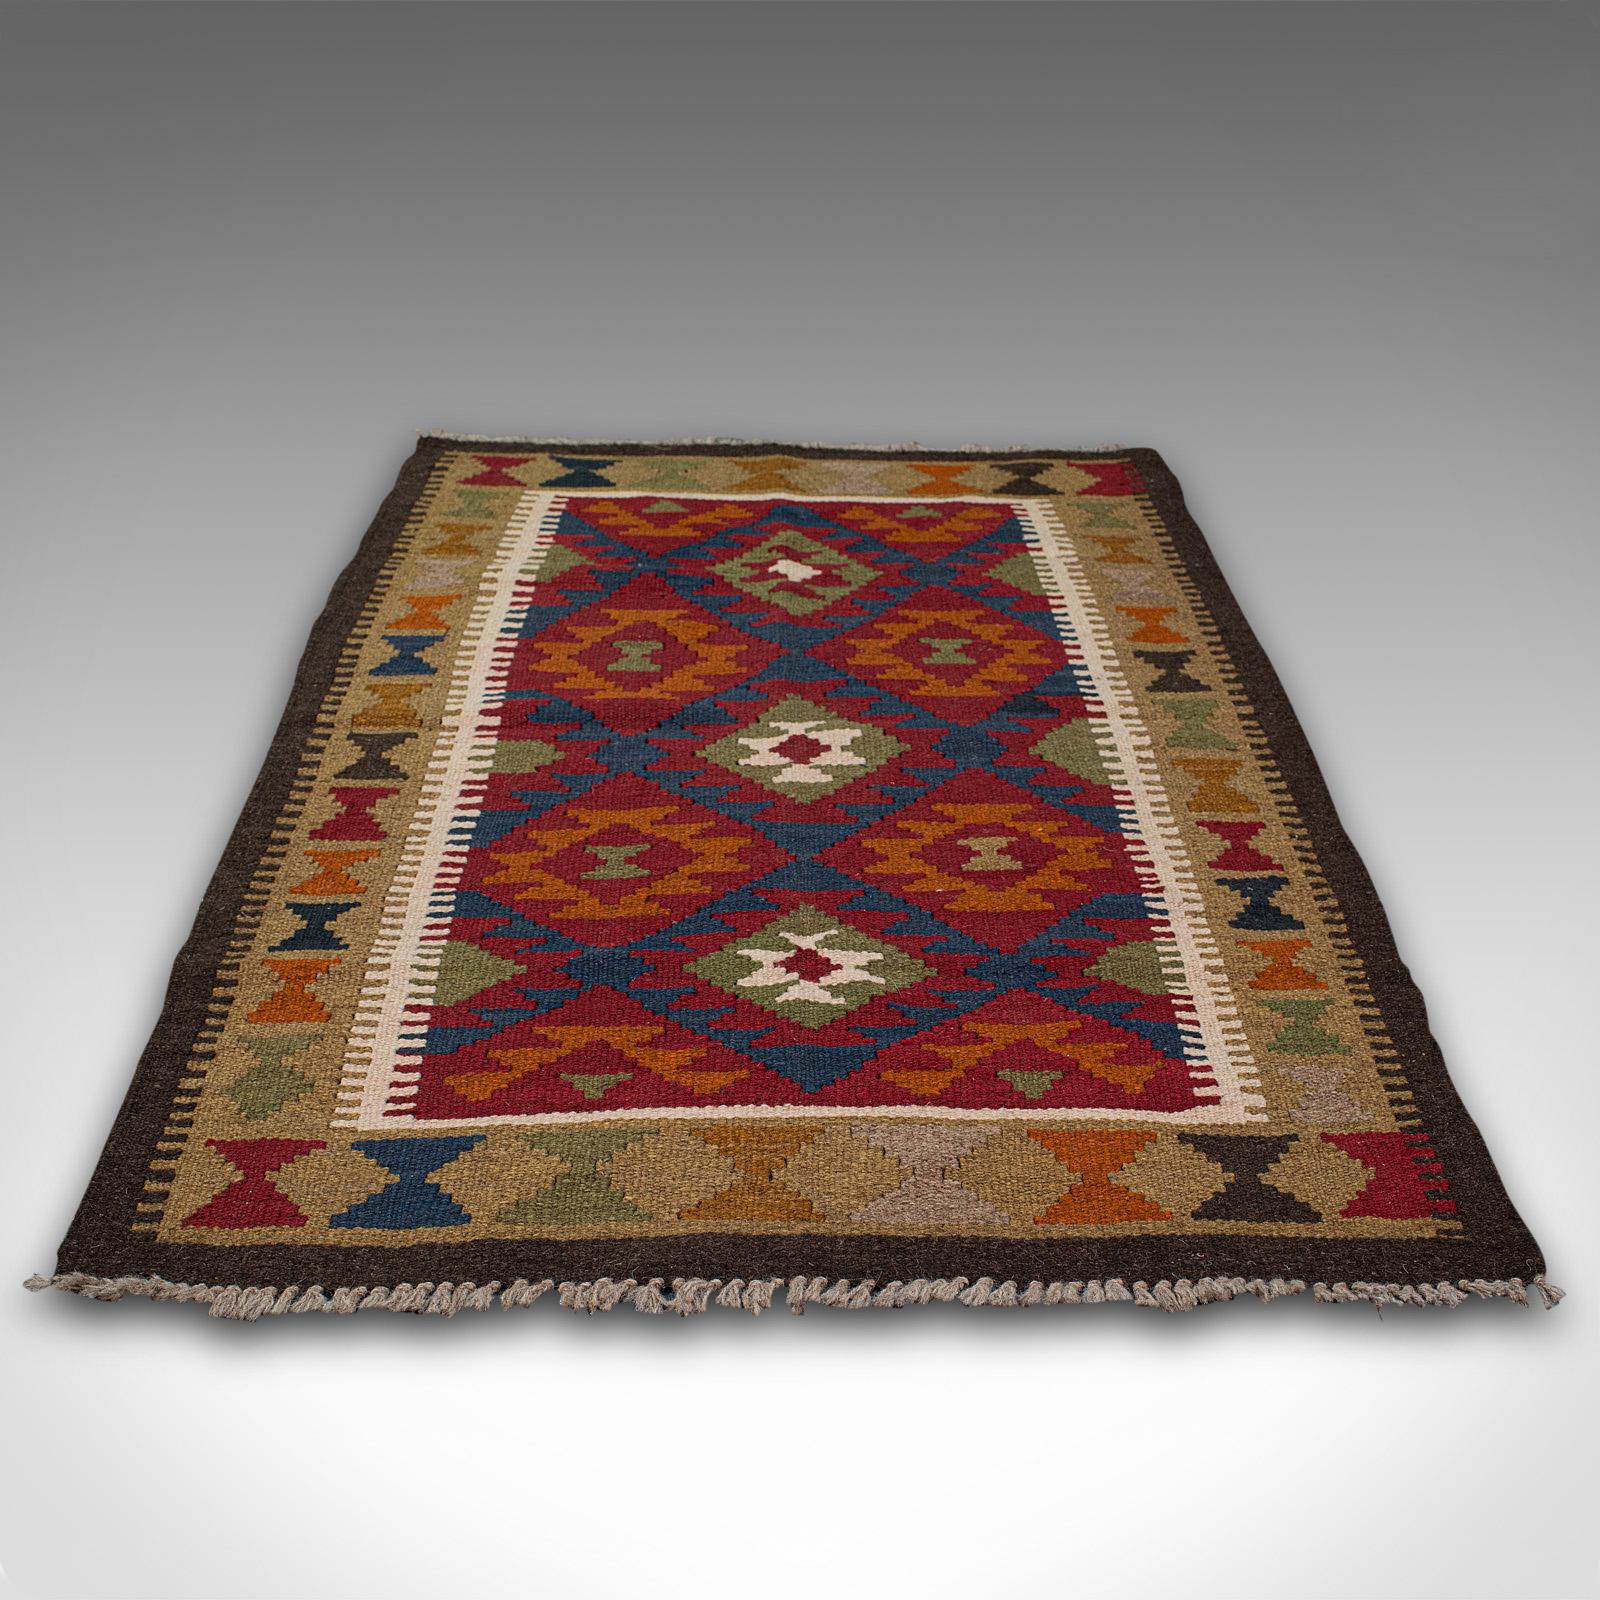 Dies ist ein kleiner alter Maimana-Kilim-Teppich. Ein gewebter Gebetsteppich aus dem Nahen Osten, datiert auf das späte 20. Jahrhundert, um 1970.

Nützliche Gebetsteppich- oder Eingangsgröße mit 87,5 cm x 140 cm (34,5